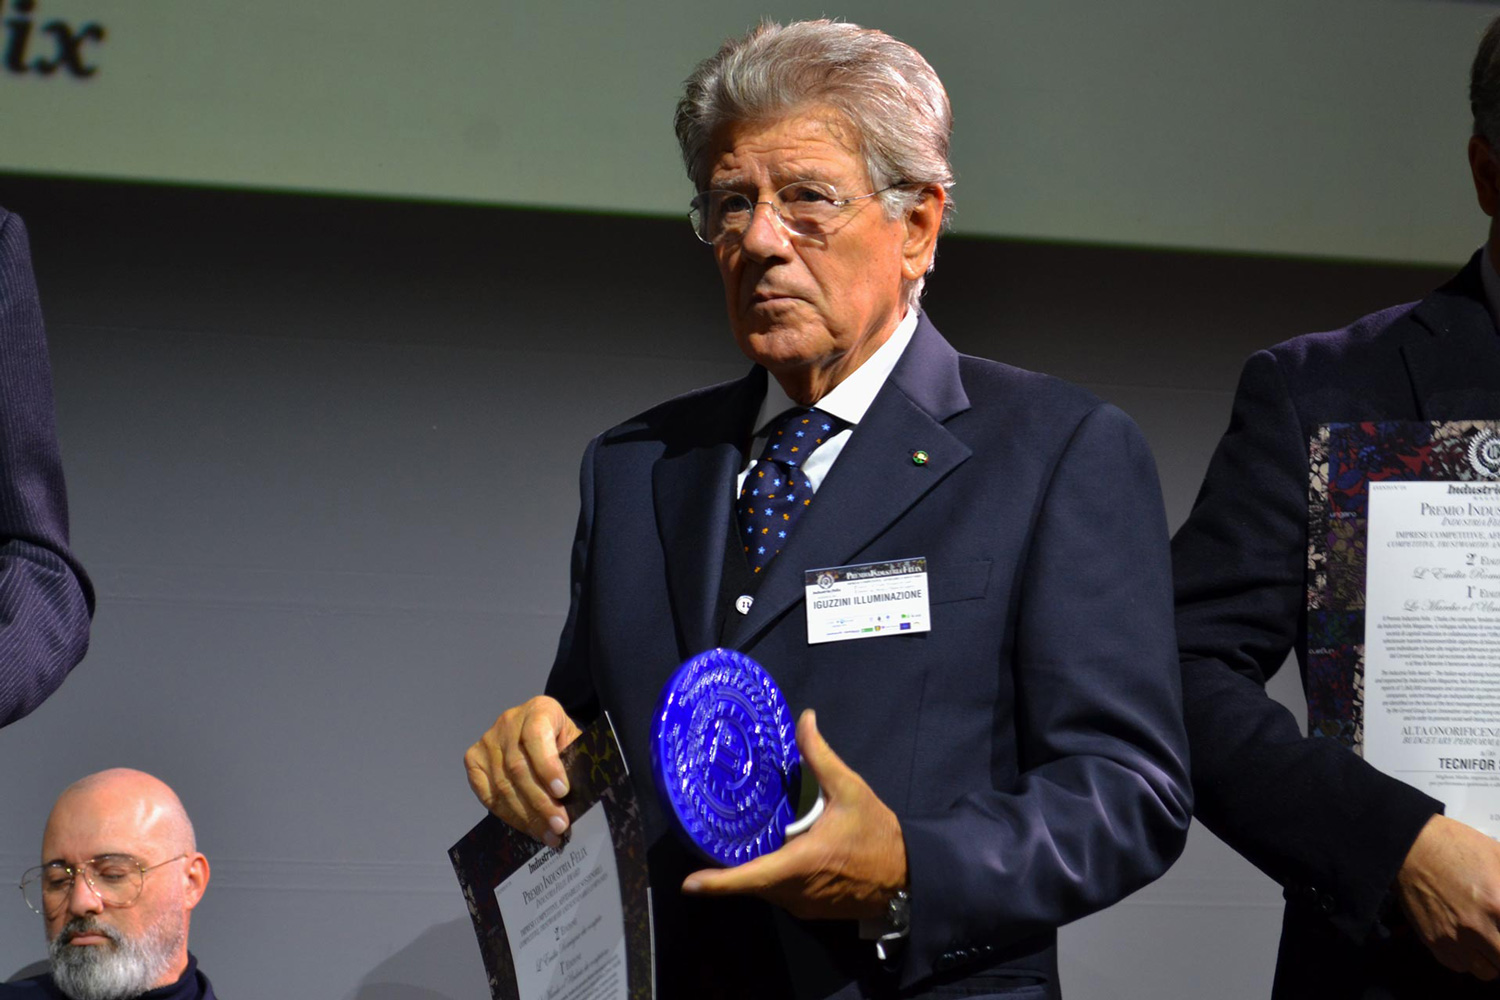 A iGuzzini il Premio Industria Felix